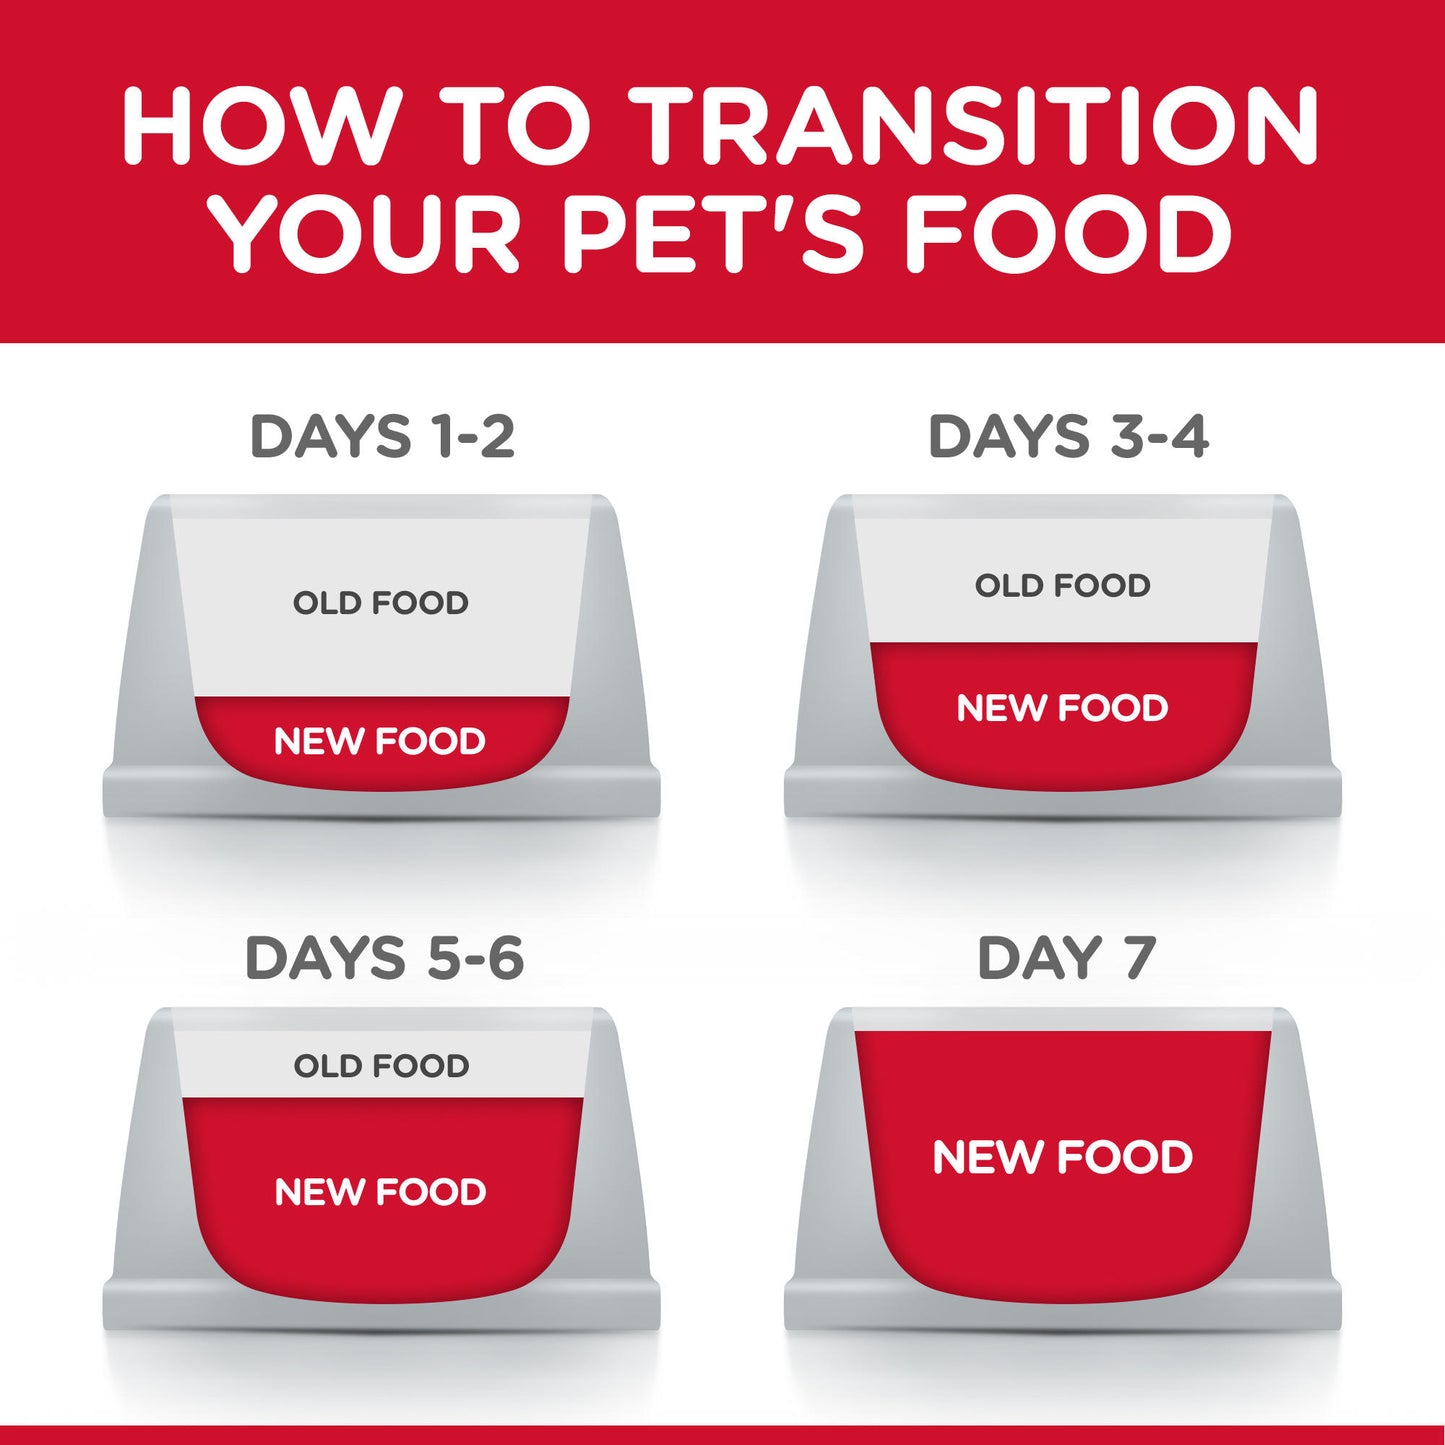 Hill's Science Diet Kitten Chicken Recipe Dry Cat Food, 7 lb bag